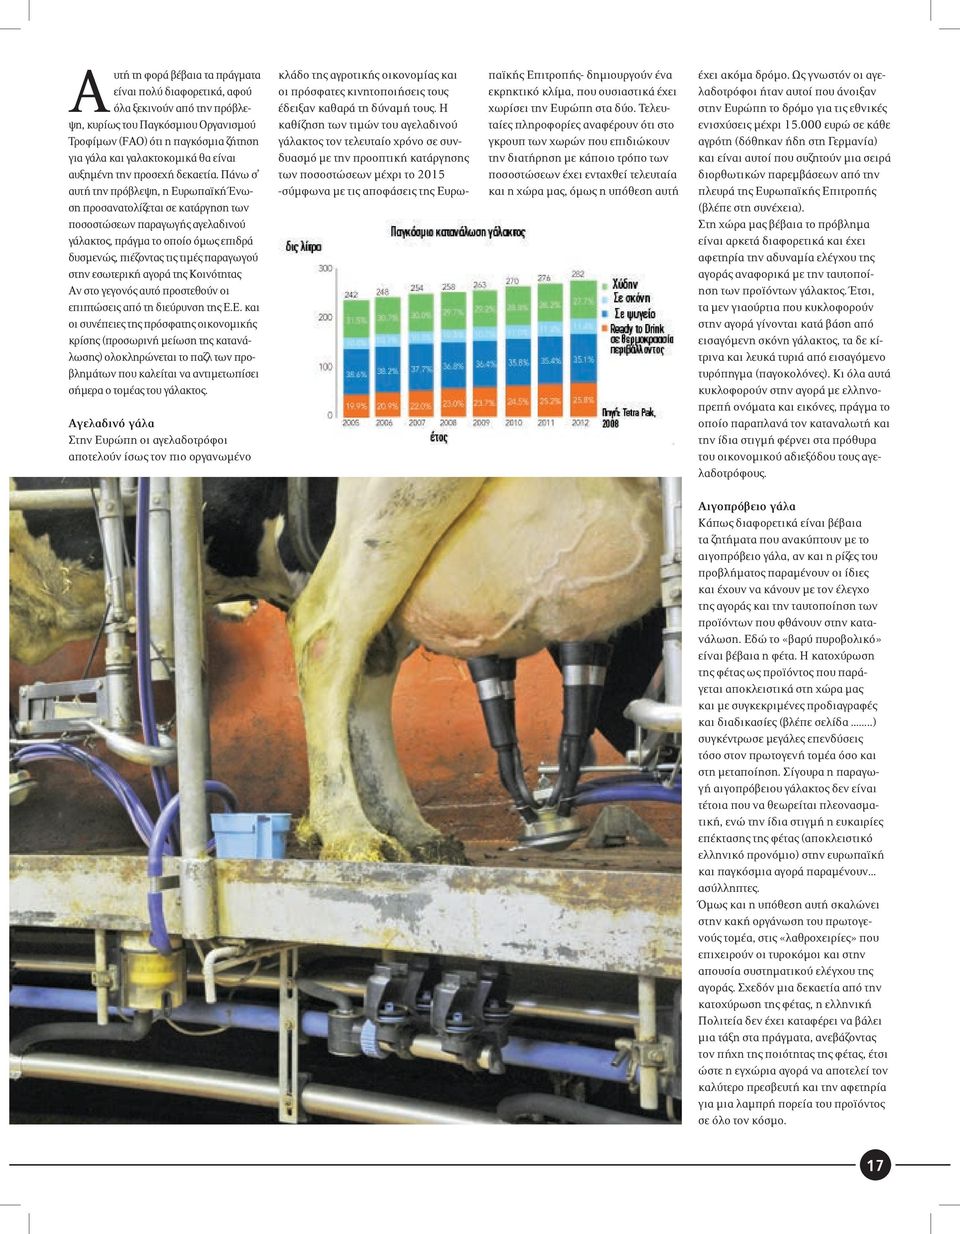 Πάνω σ αυτή την πρόβλεψη, η Ευρωπαϊκή Ένωση προσανατολίζεται σε κατάργηση των ποσοστώσεων παραγωγής αγελαδινού γάλακτος, πράγμα το οποίο όμως επιδρά δυσμενώς, πιέζοντας τις τιμές παραγωγού στην